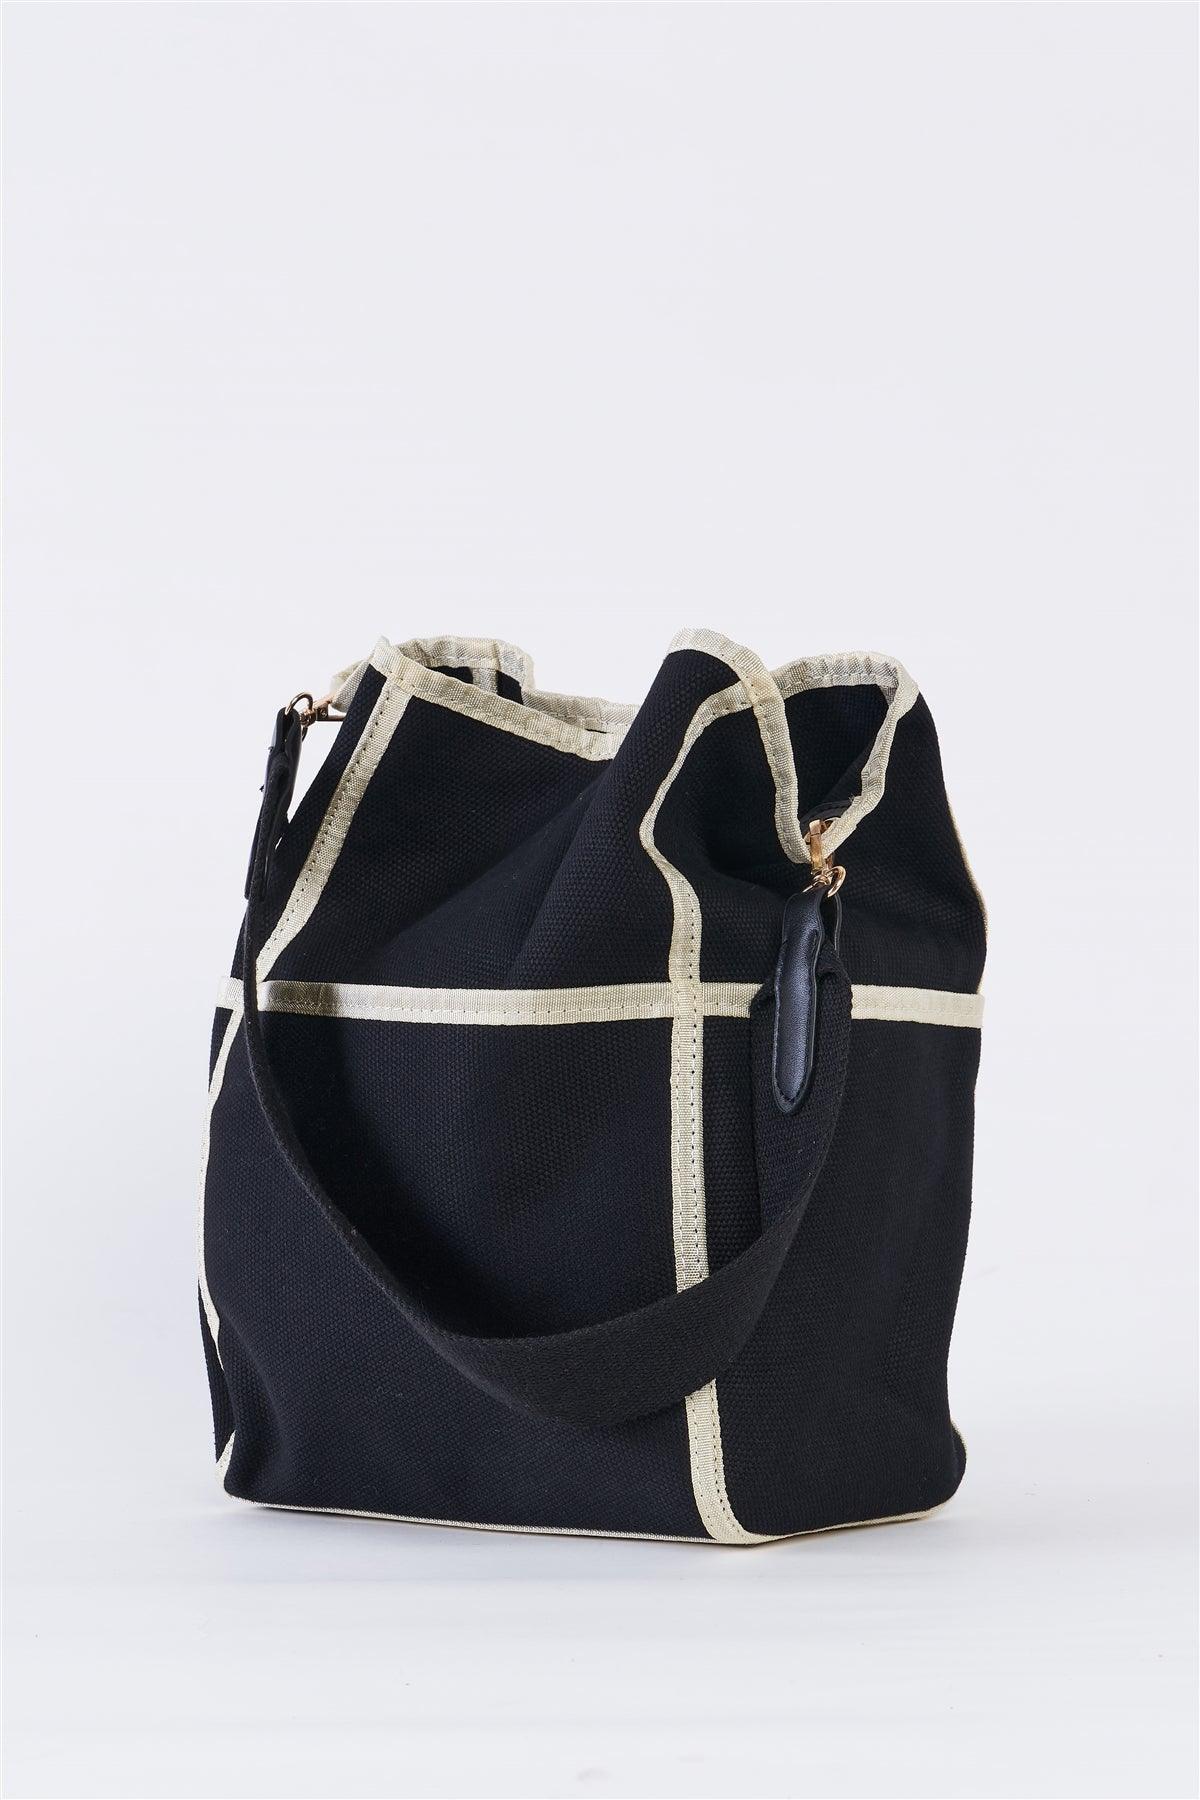 Black Canvas Hardware Belt Detail Shoulder Strap Tote Bag /1 Bag